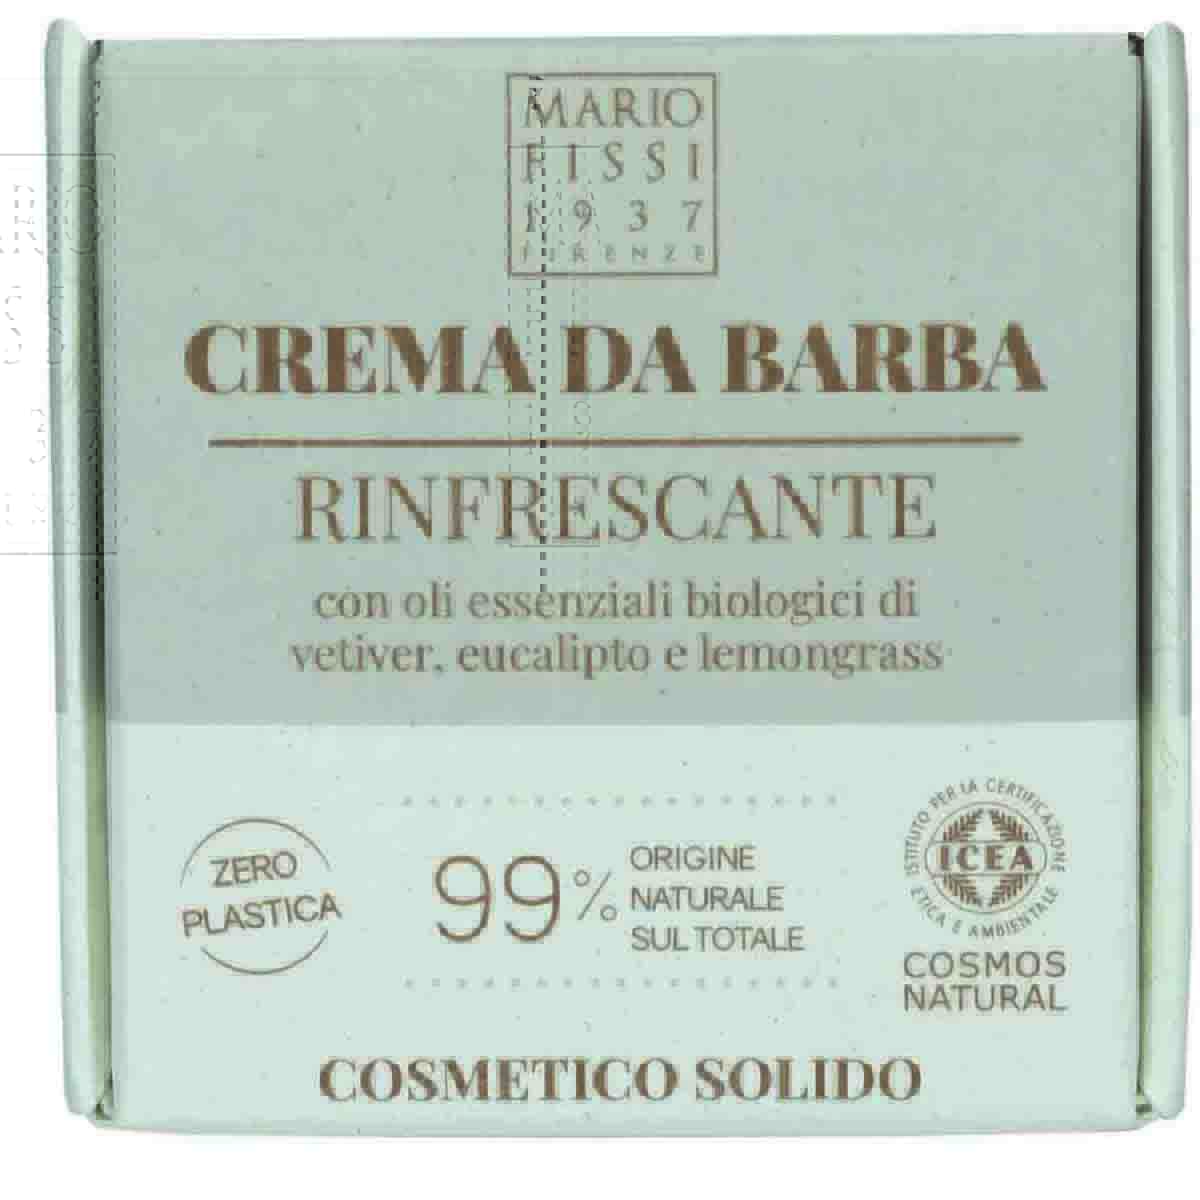 Крем-мыло для бритья твердое Mario Fissi 1937 Square Оcвежающее anti acne крем тинт с эффектом сияния тон светлый 30г